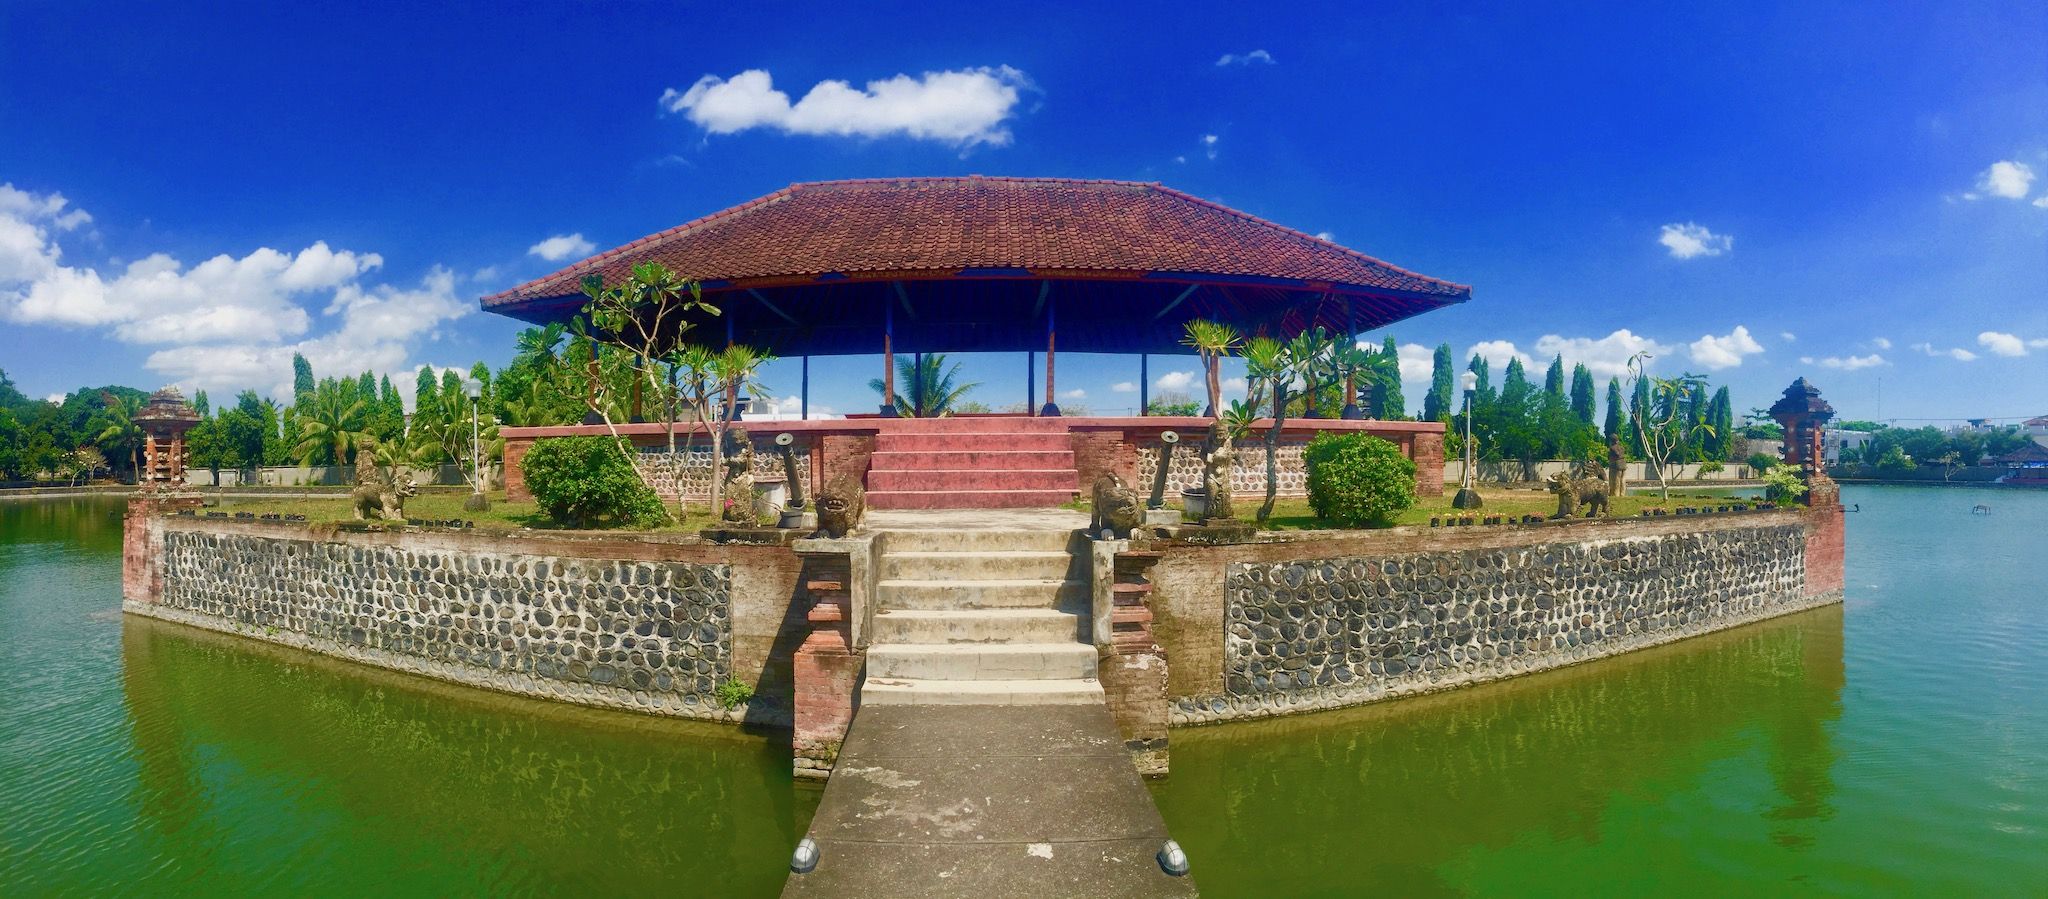 Consigli per i tour in Indonesia – Lo stato insulare attira con luoghi paradisiaci